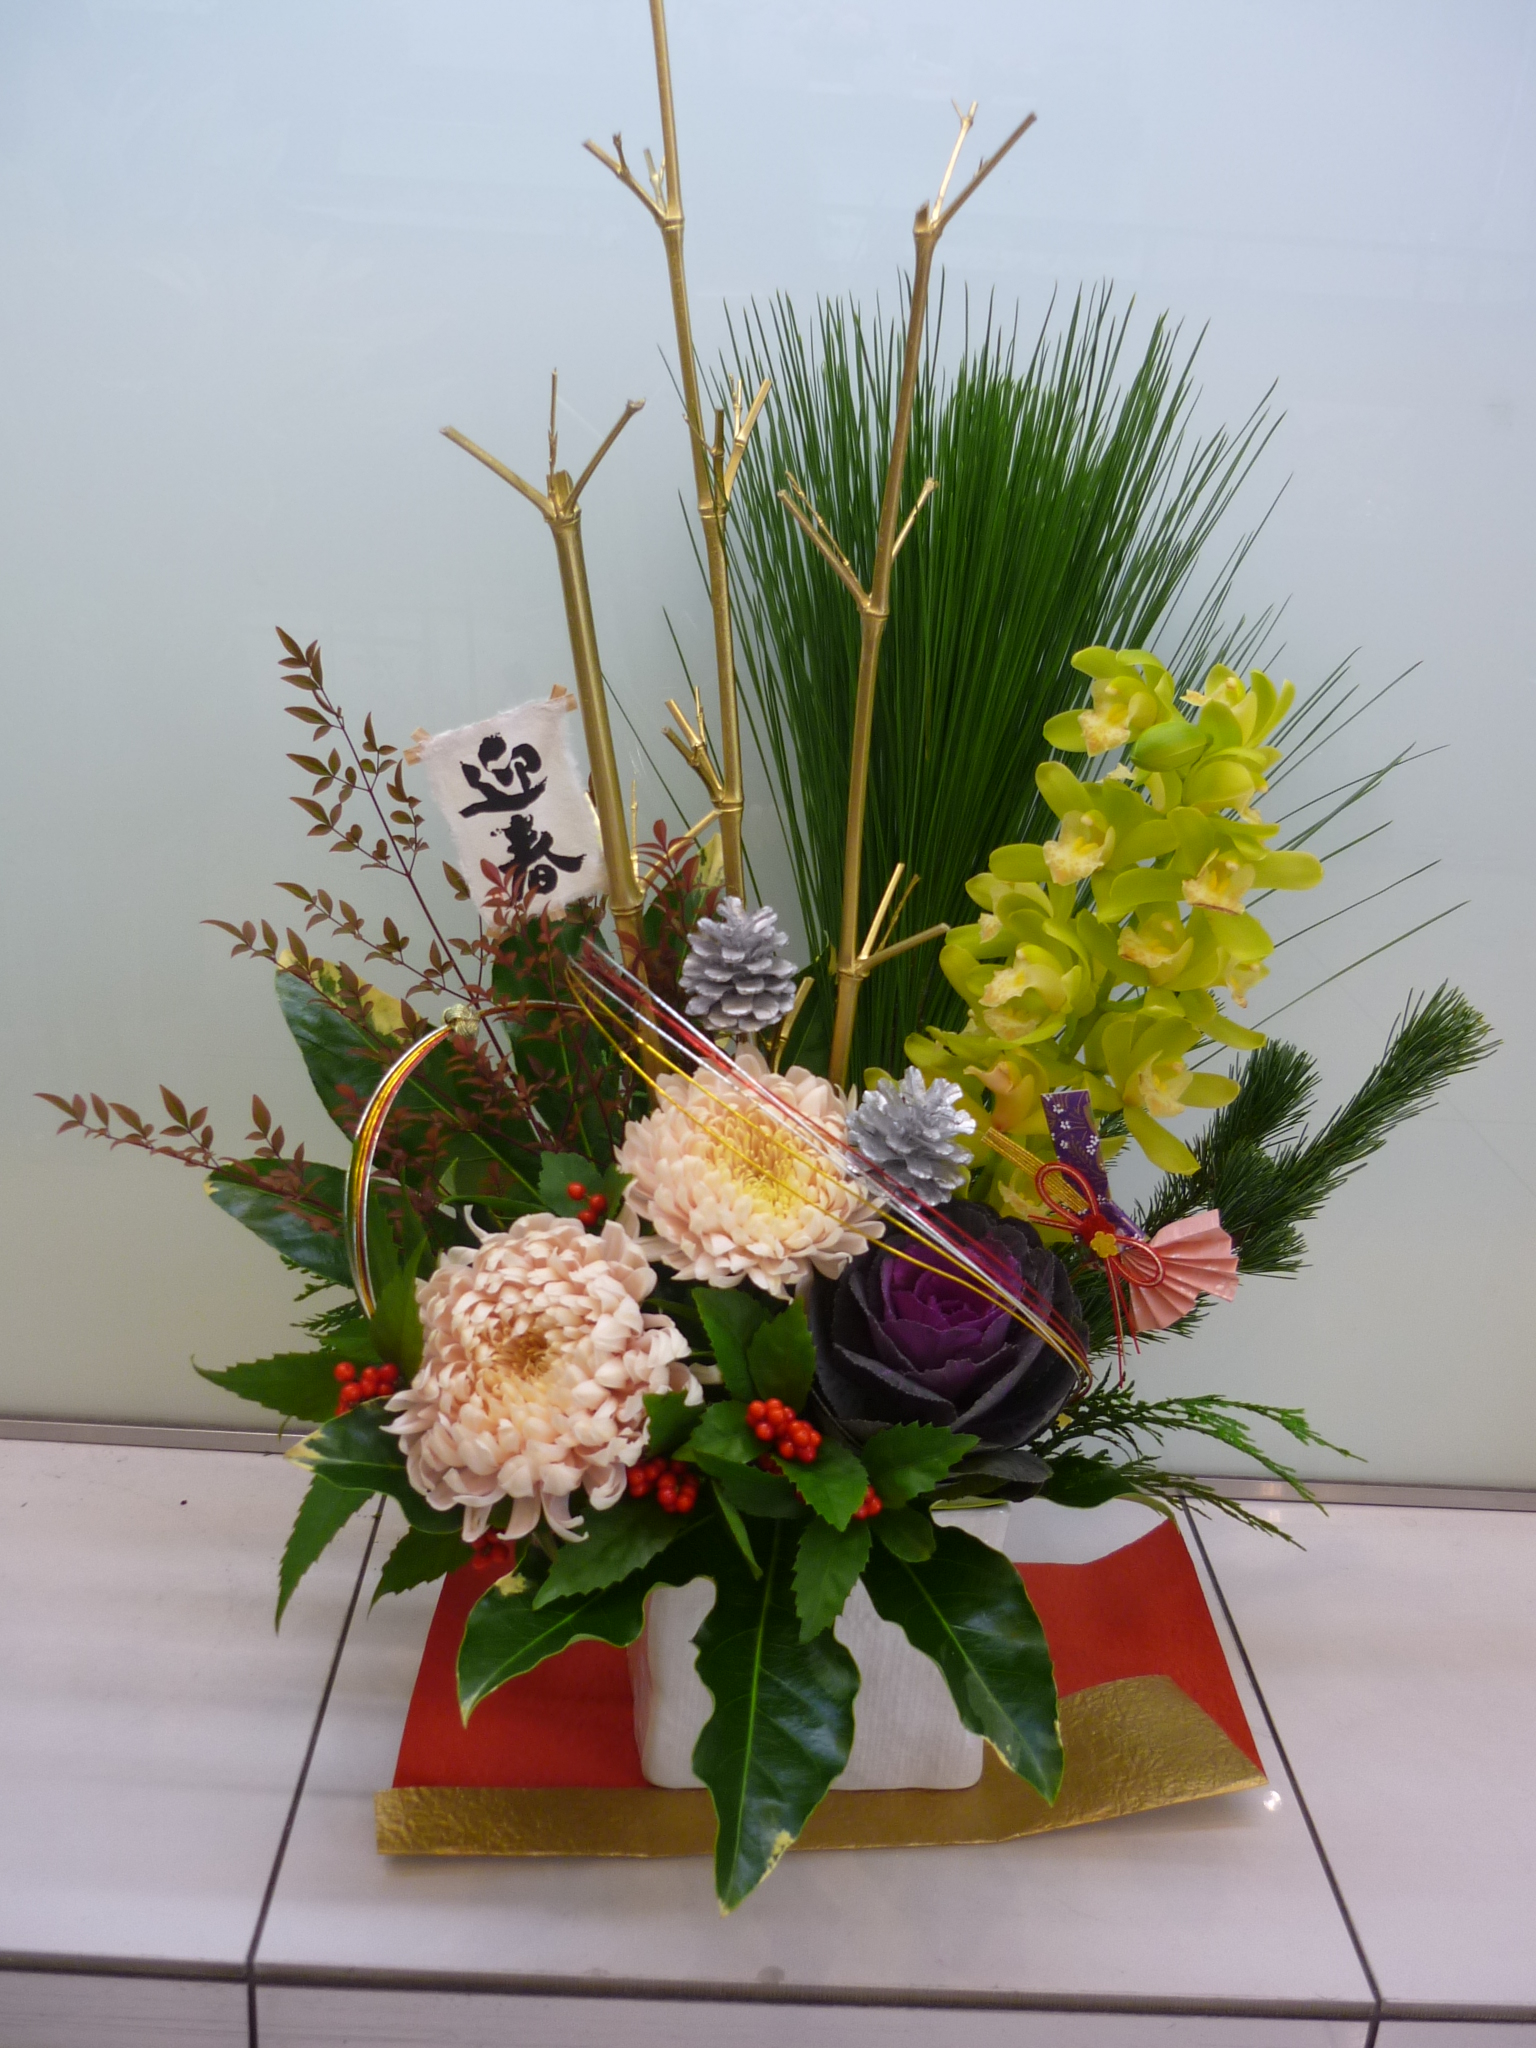 Flower Shop Jardin Clair フラワーショップ ジャルダン クレール 神戸でお花 お正月飾り花 ご予約受付中